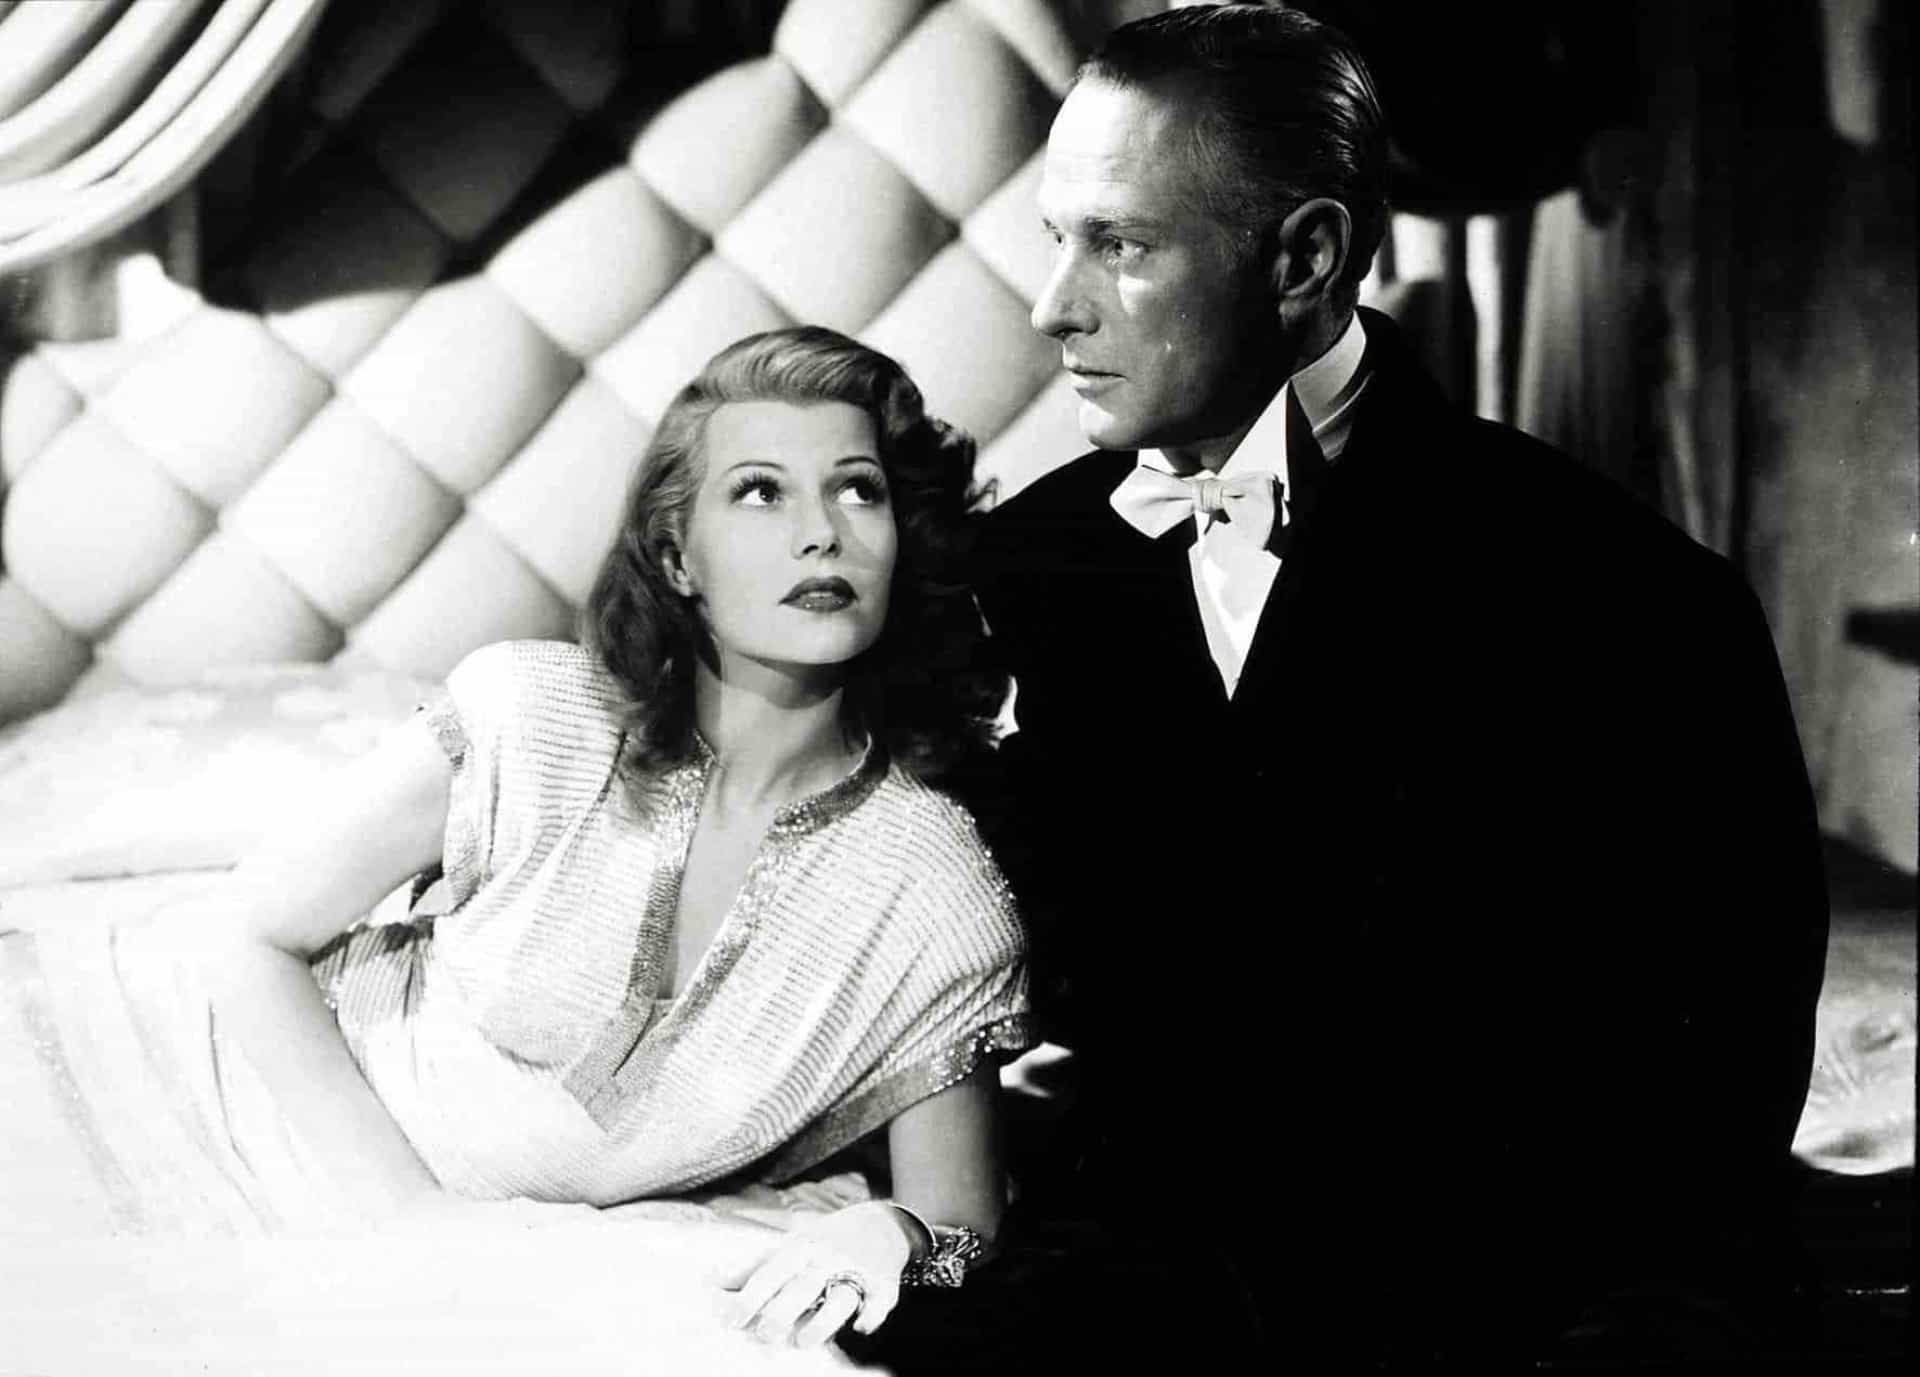 <p>Neben Sport, schnellen Autos und Frauen hatte er noch eine weitere Leidenschaft: das Kino. Einer der beliebtesten Filme der 1940er war "Gilda", mit Rita Hayworth in der Hauptrolle. Der Film brachte ihr den Spitznamen "The Love Goddess", die Liebesgöttin, ein.</p>